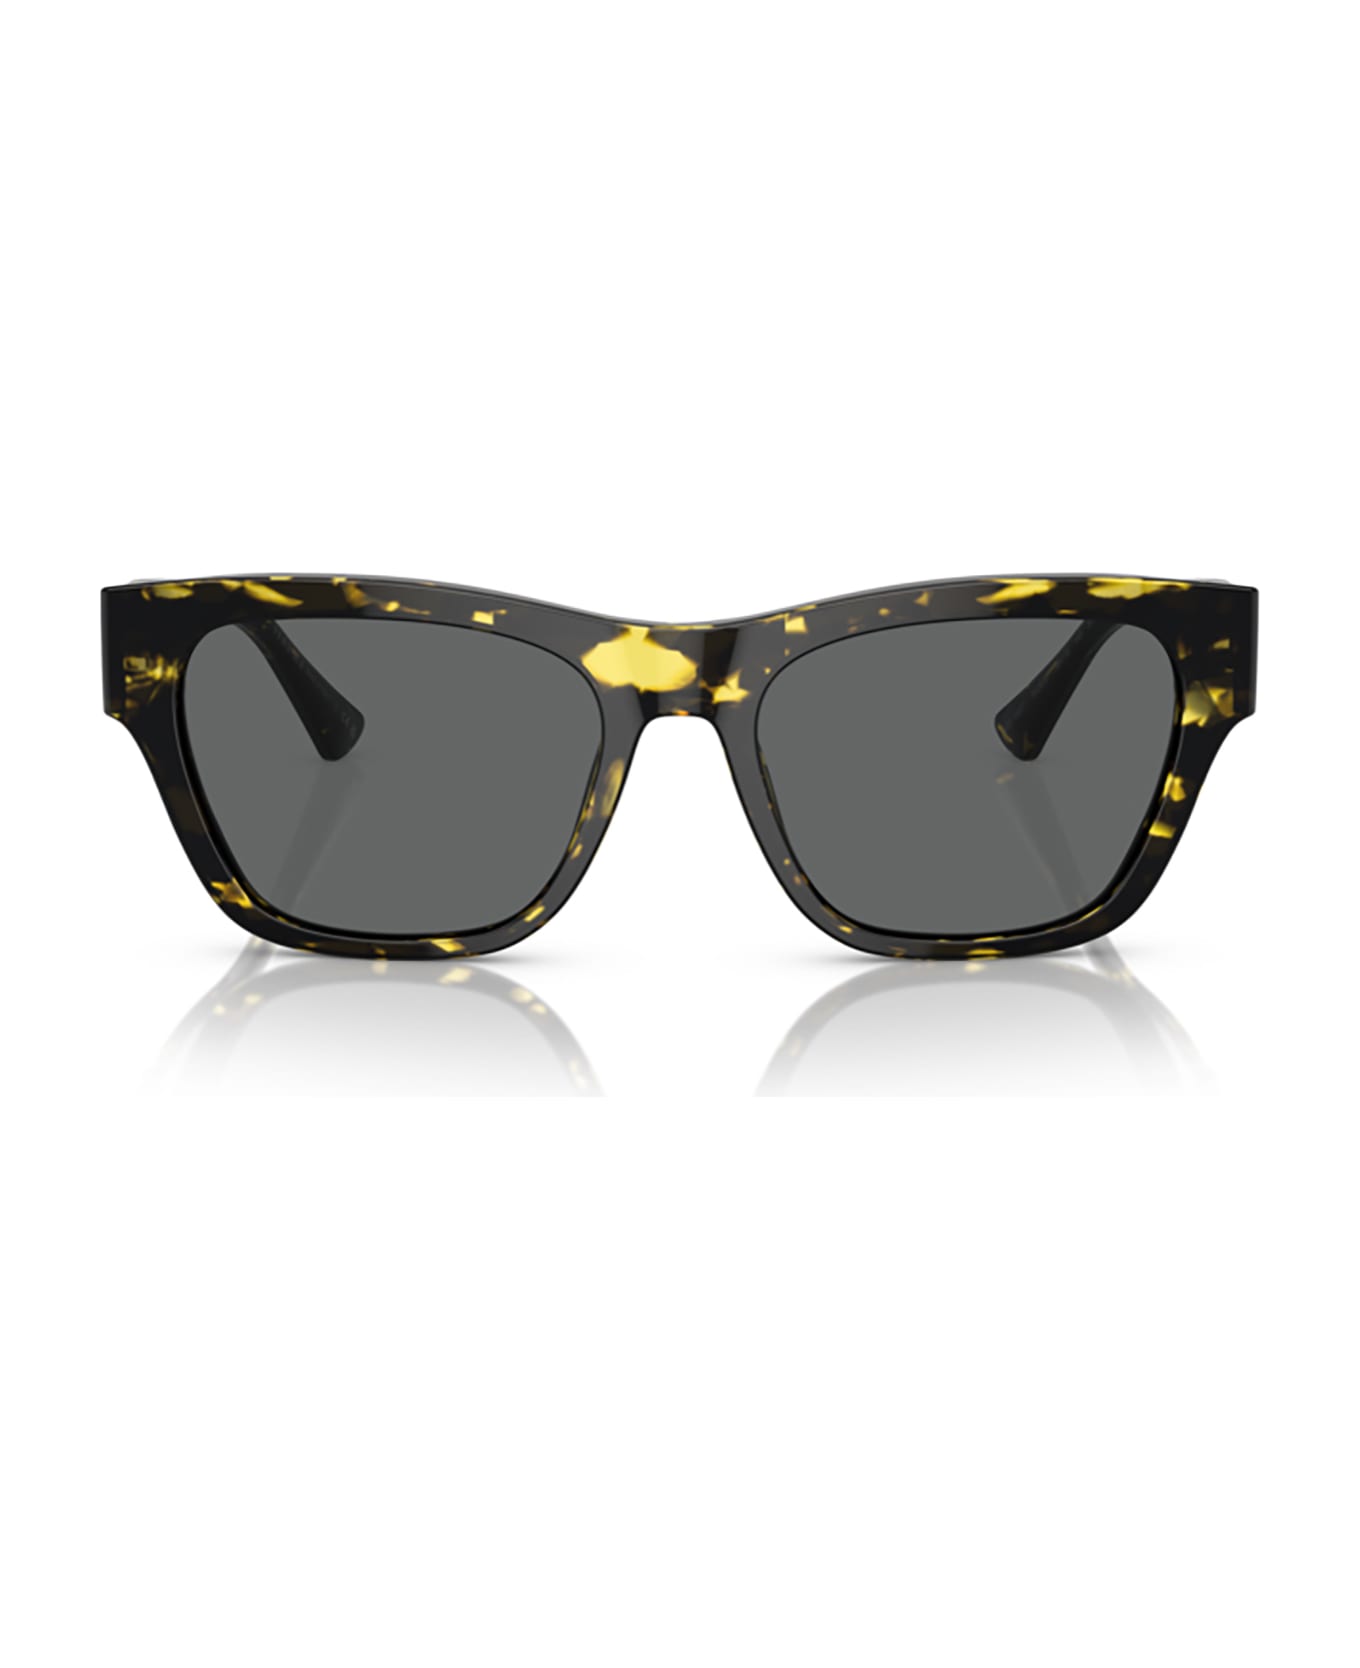 Versace Eyewear Ve4457 Havana Sunglasses - Havana